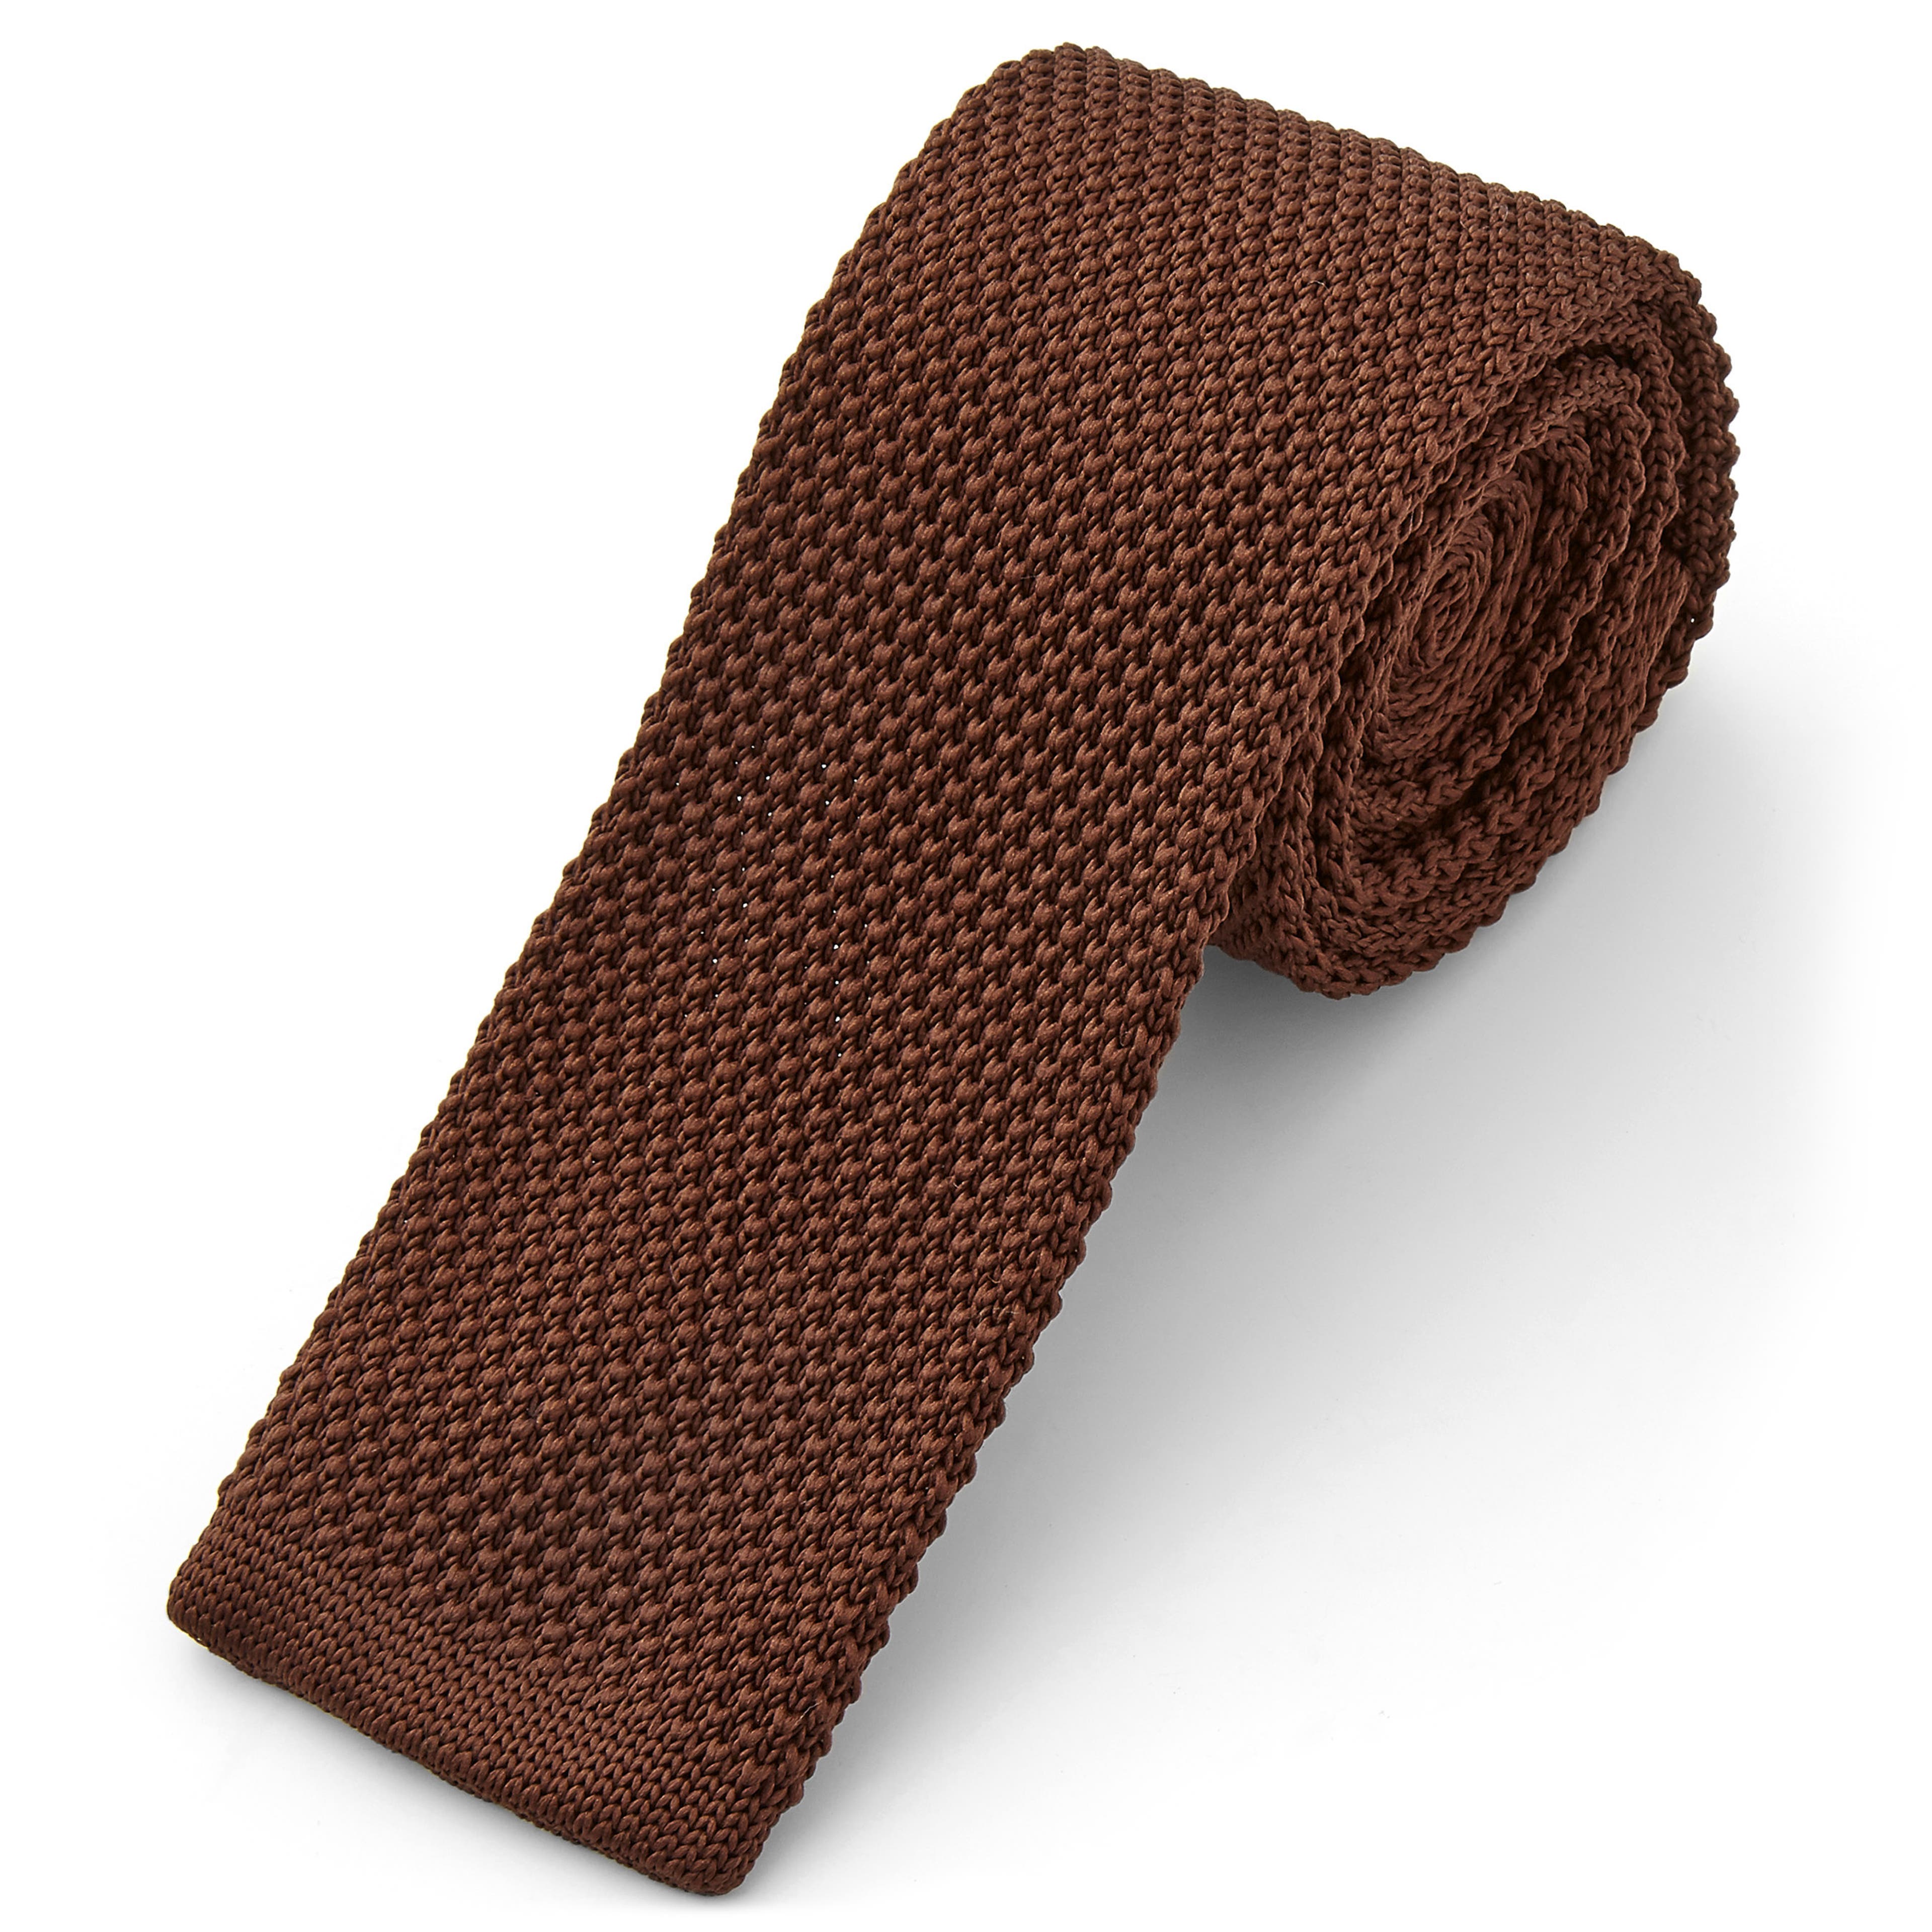 Csokoládészínű kötött nyakkendő